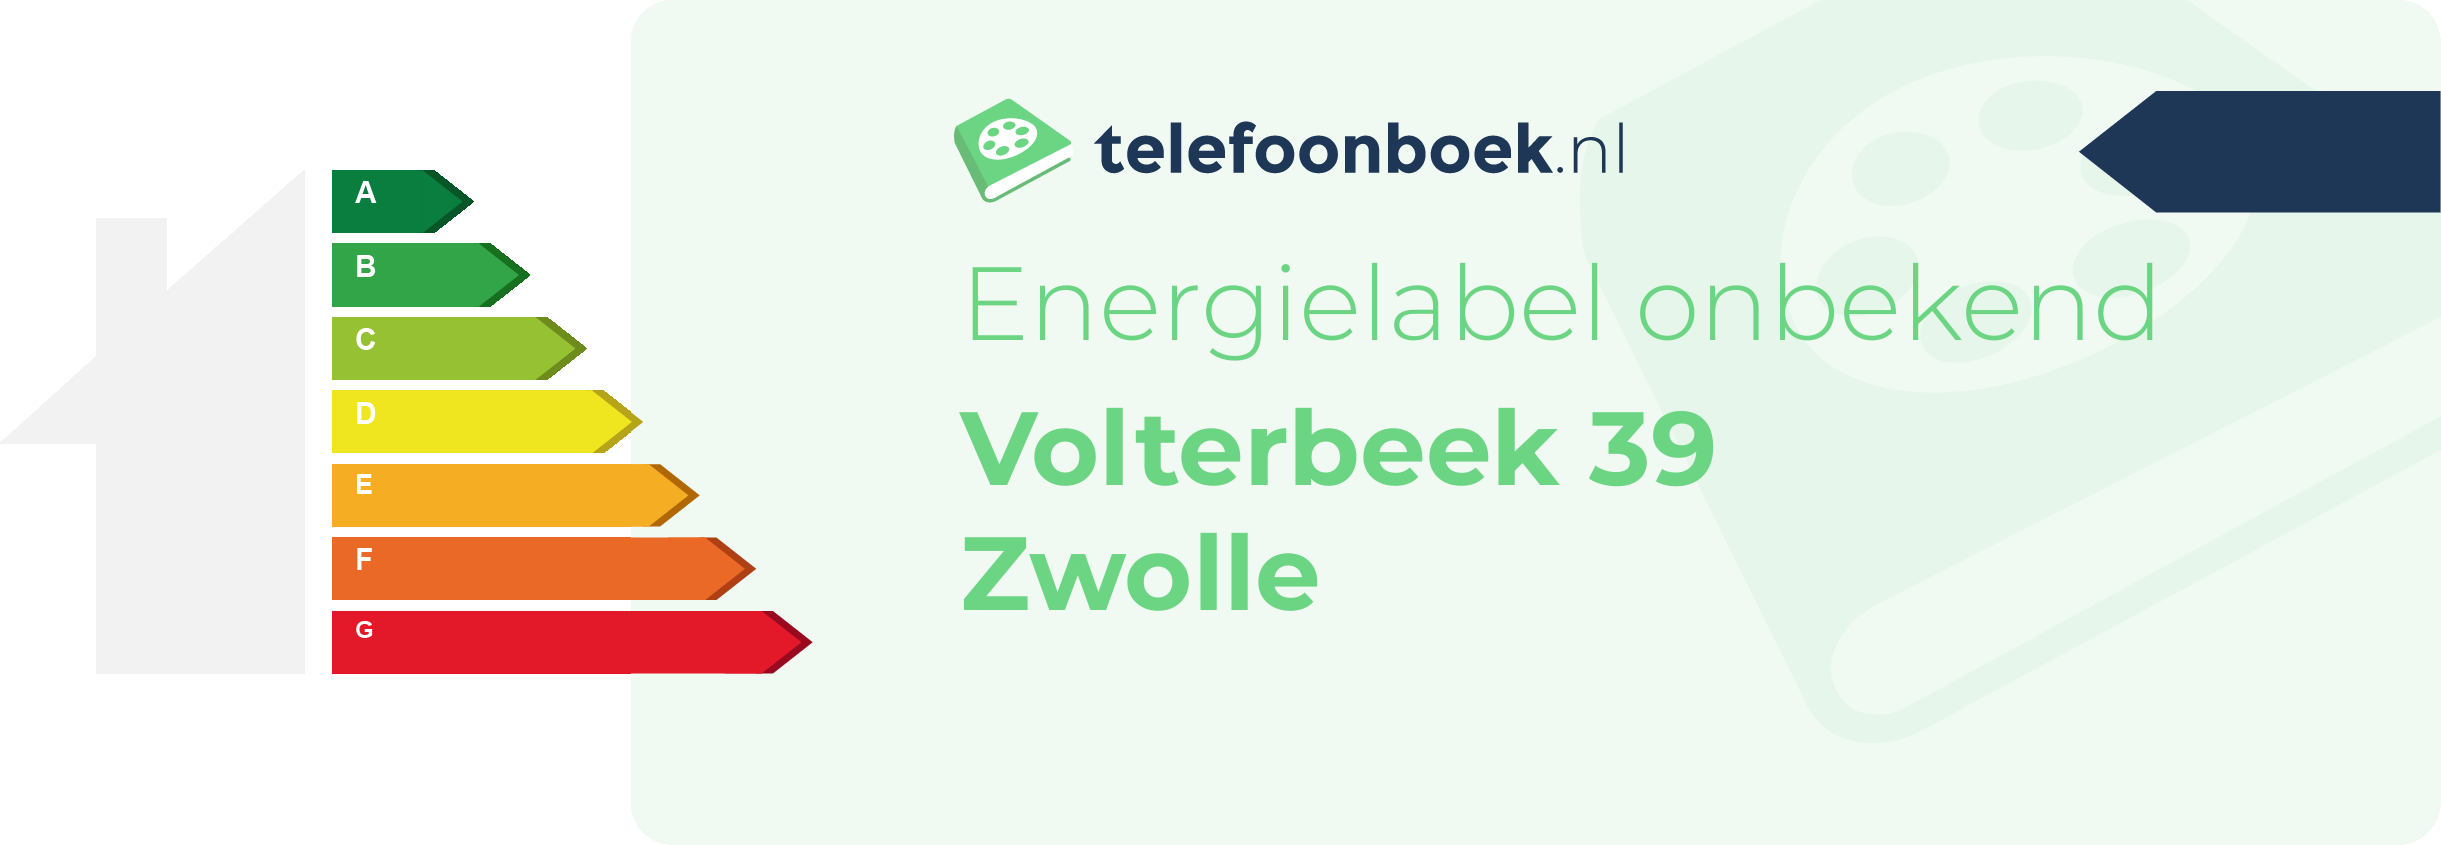 Energielabel Volterbeek 39 Zwolle